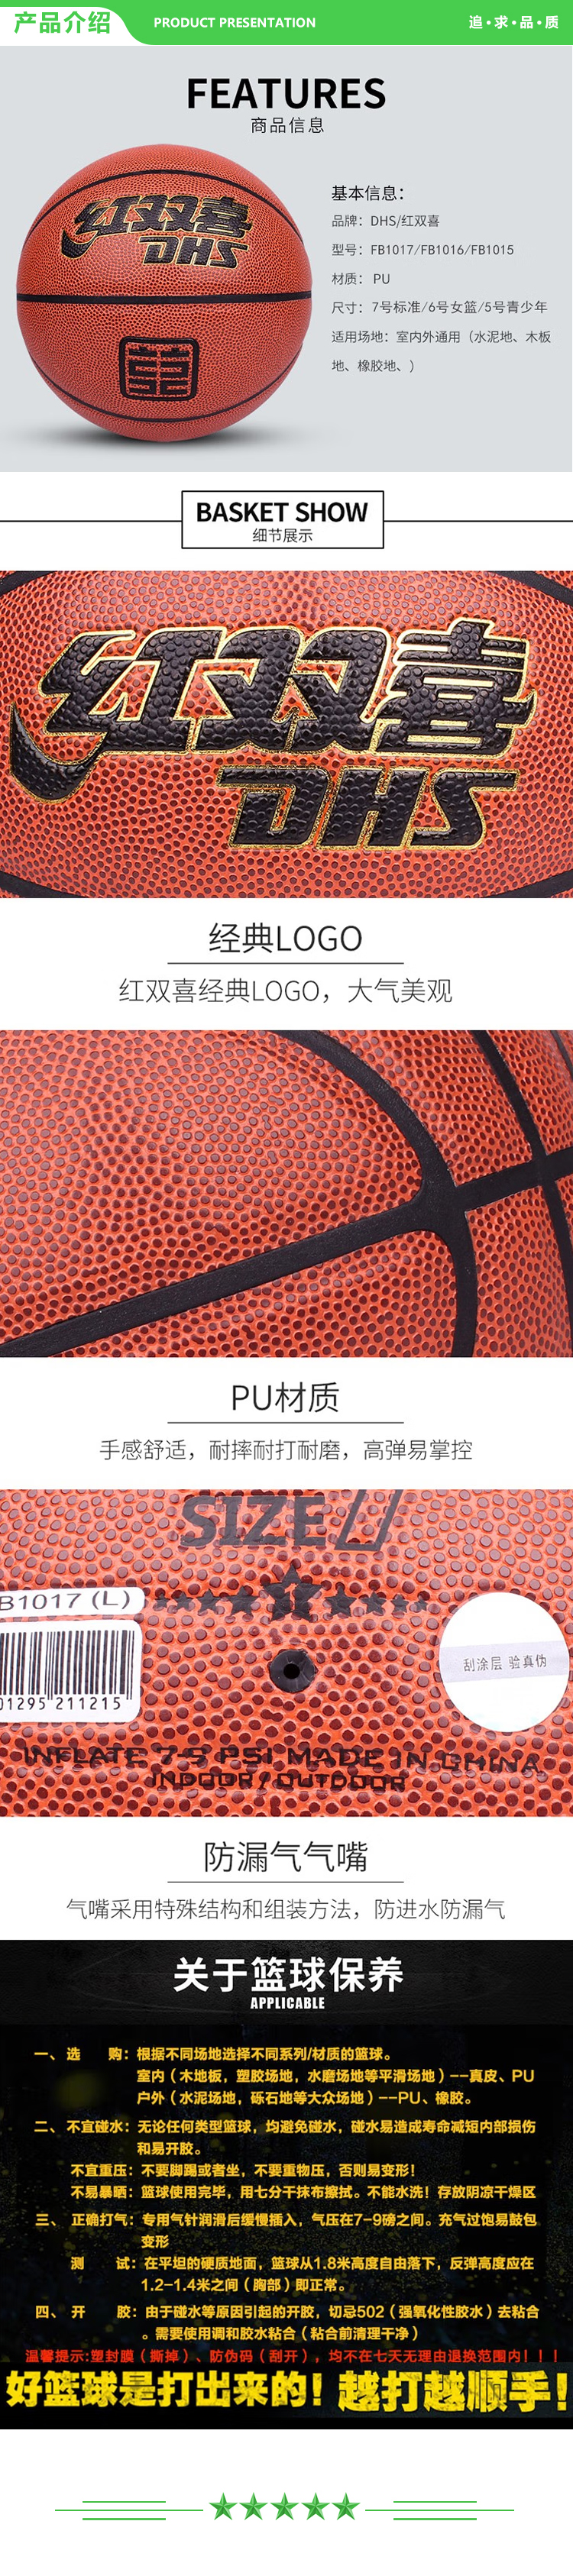 红双喜 DHS FB1015 青少年 五号篮球 一星级篮球室内外通用棕色PU球  一星级PU篮球  .jpg